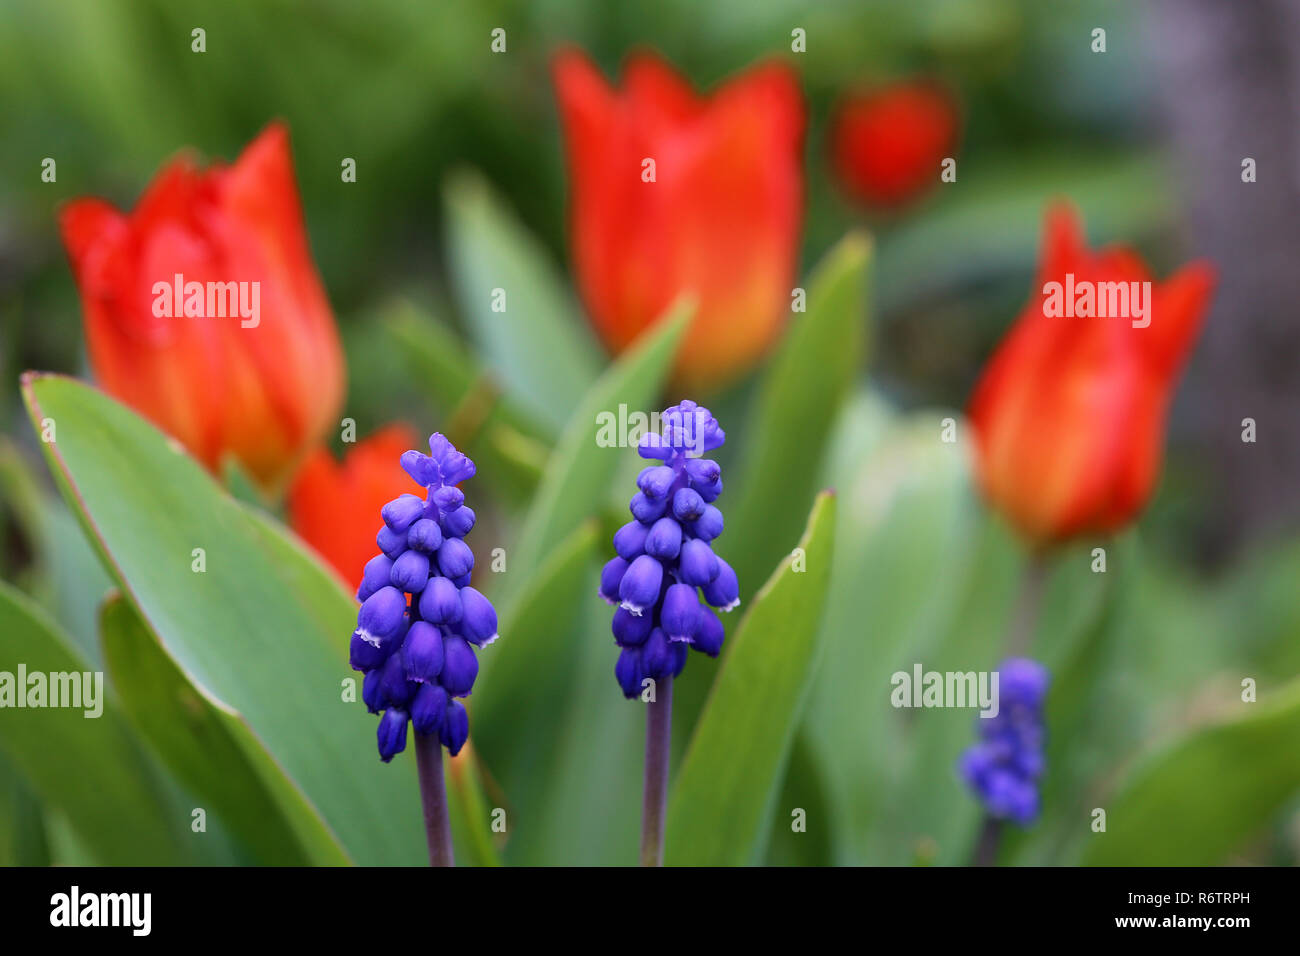 Uva blu giacinti bloom nella parte anteriore dei tulipani rossi Foto Stock